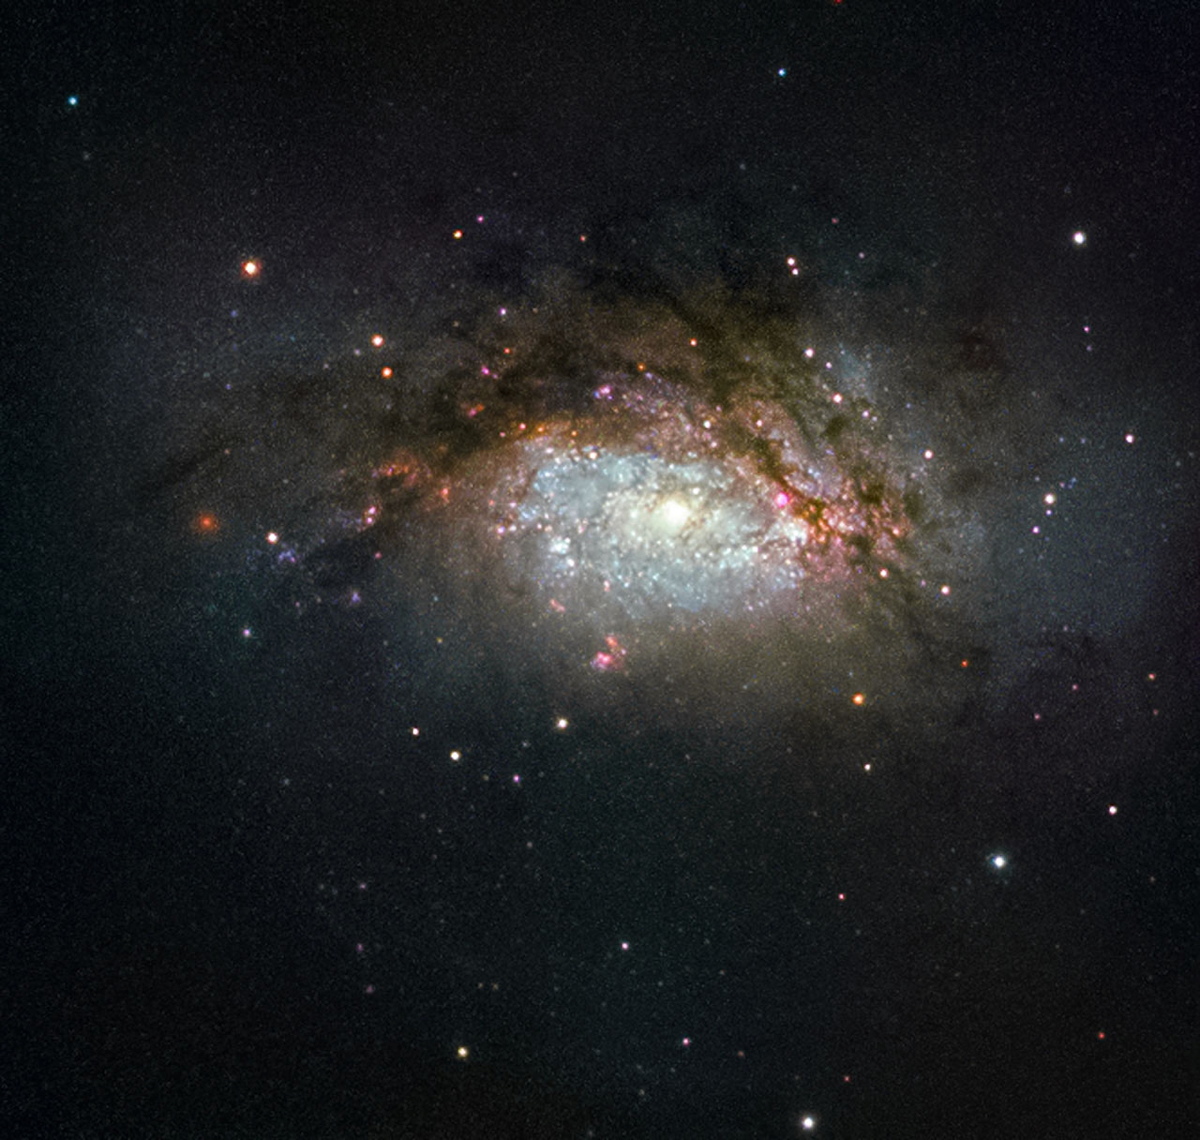 merging-galaxy-ngc-3597.jpg